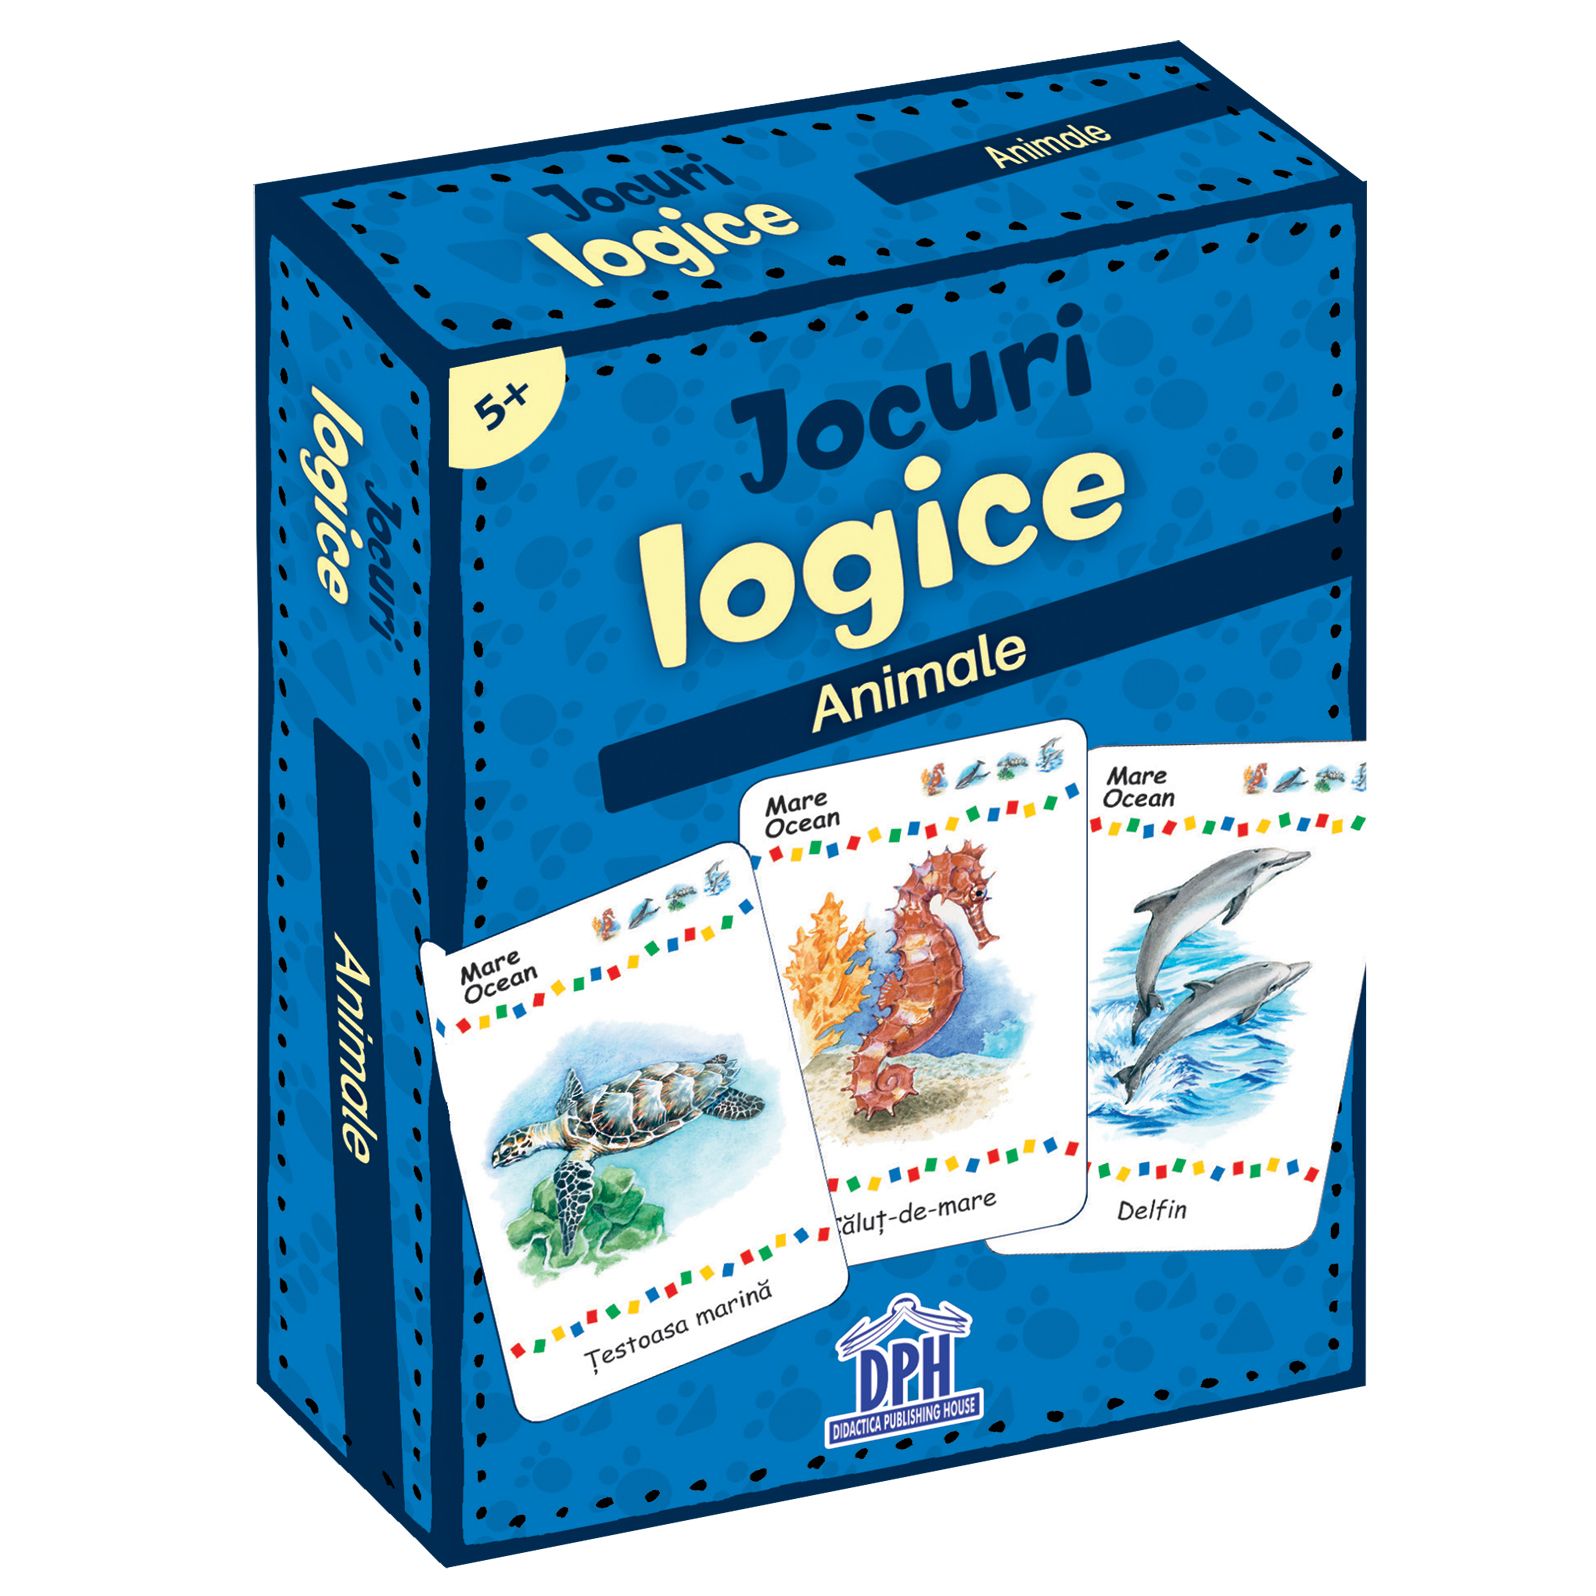 Jocuri logice – Animale | carturesti.ro